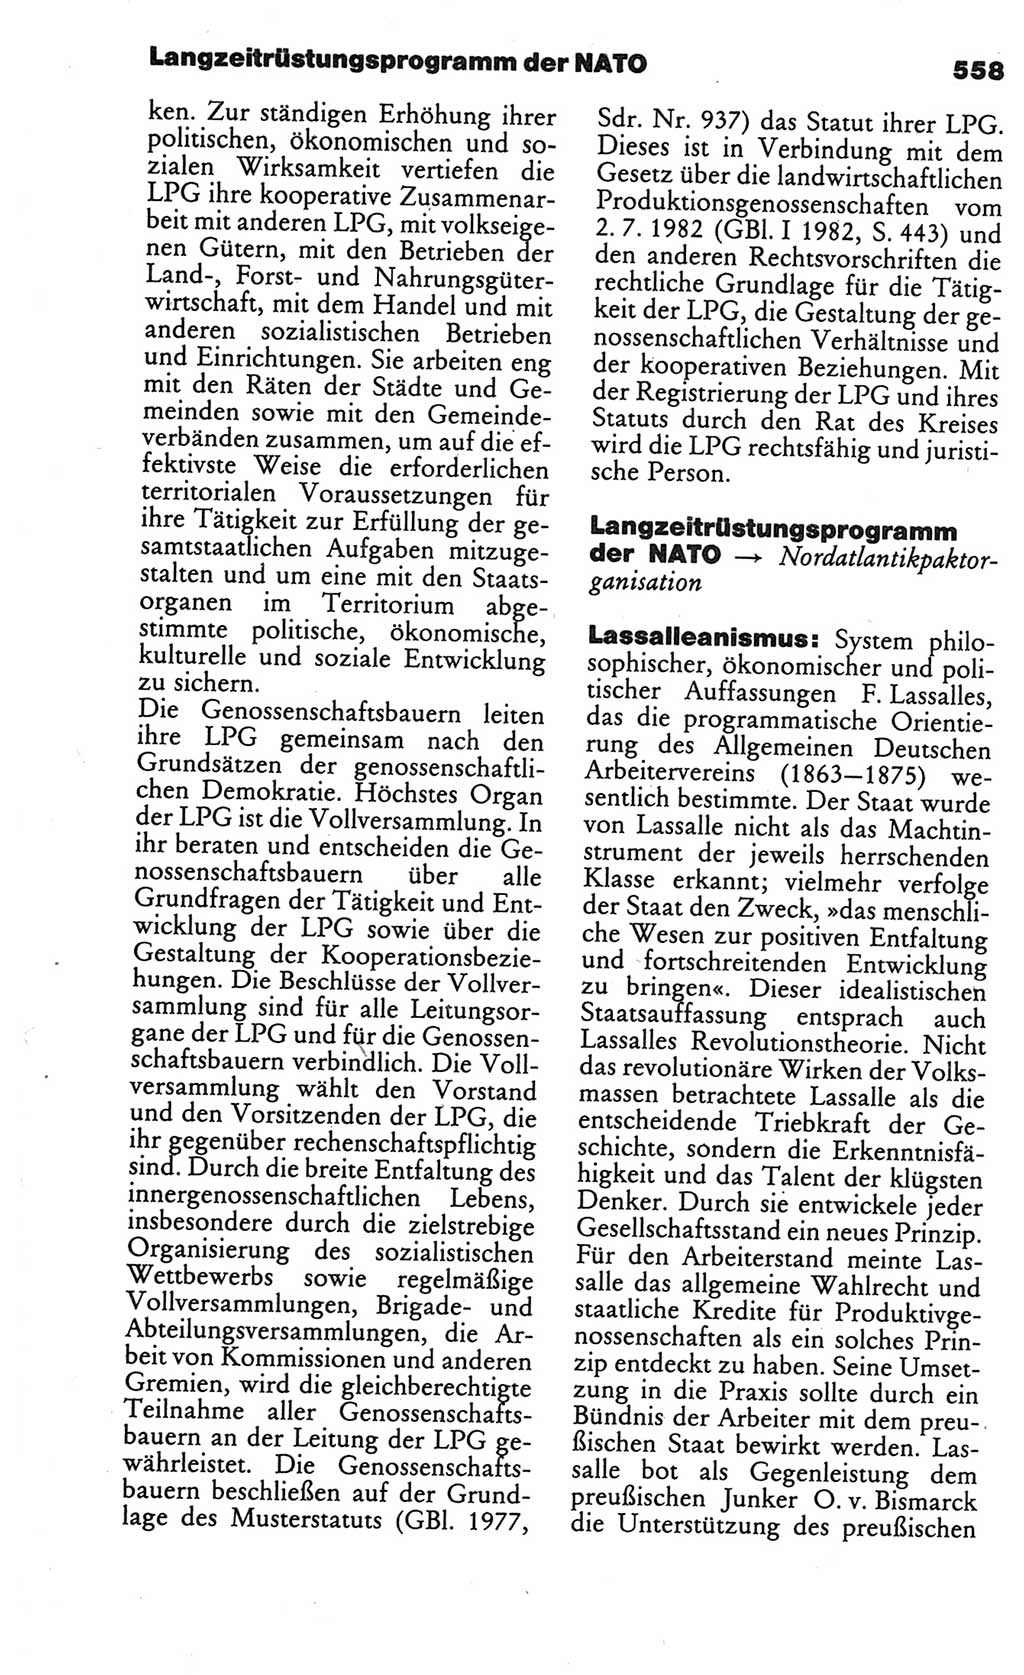 Kleines politisches Wörterbuch [Deutsche Demokratische Republik (DDR)] 1986, Seite 558 (Kl. pol. Wb. DDR 1986, S. 558)